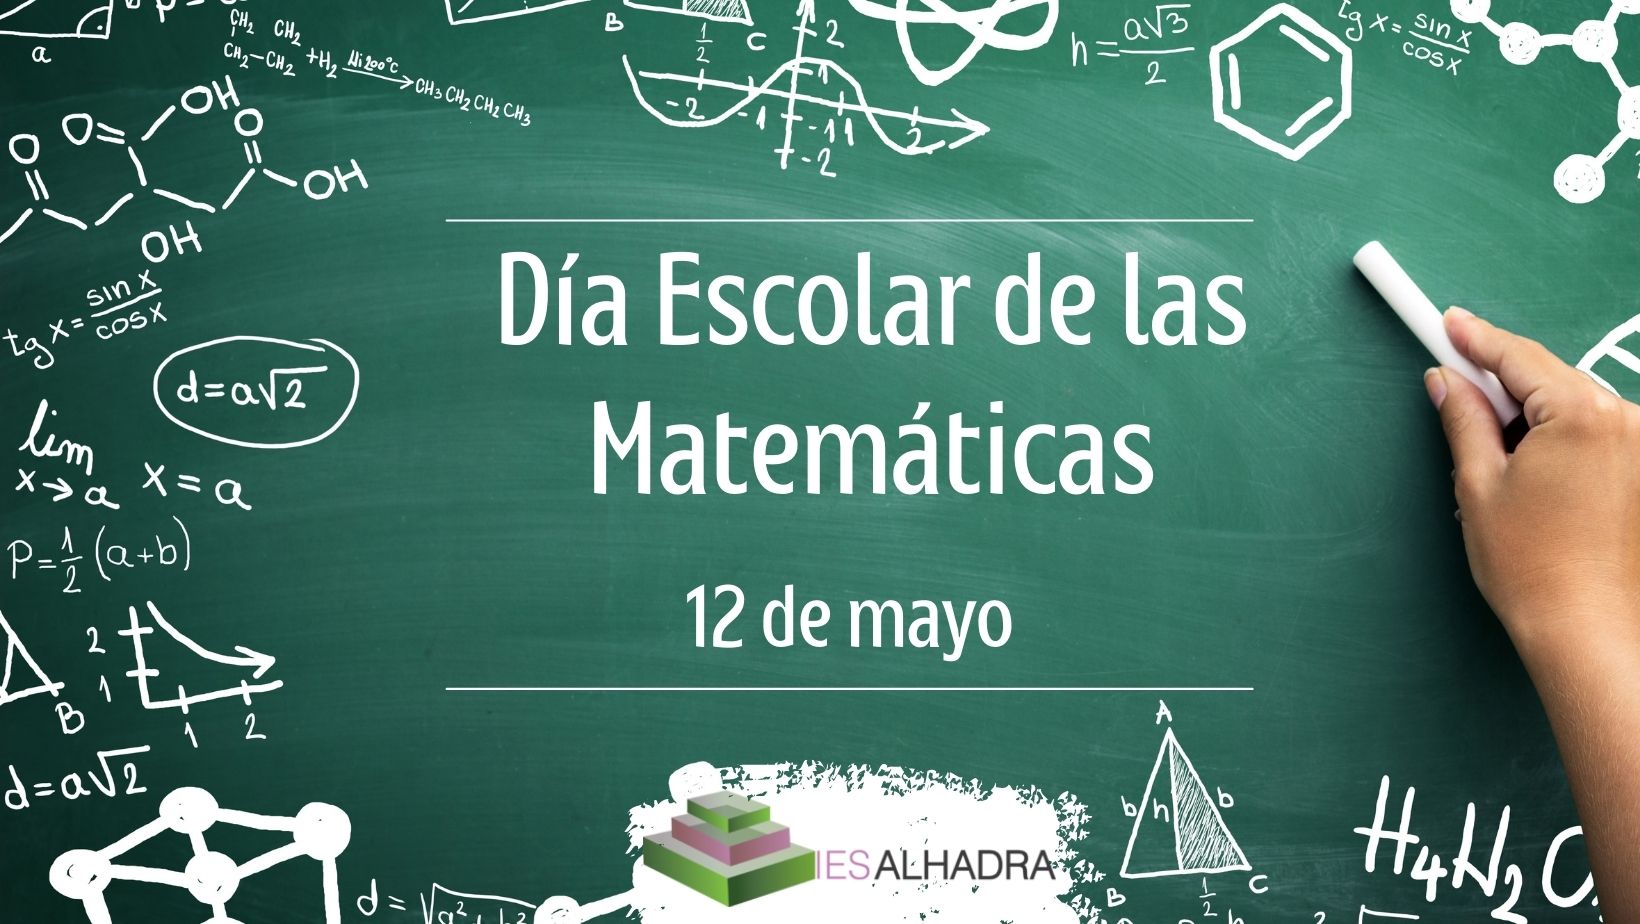 Concursos para celebrar el Día Escolar de las Matemáticas | IES Alhadra